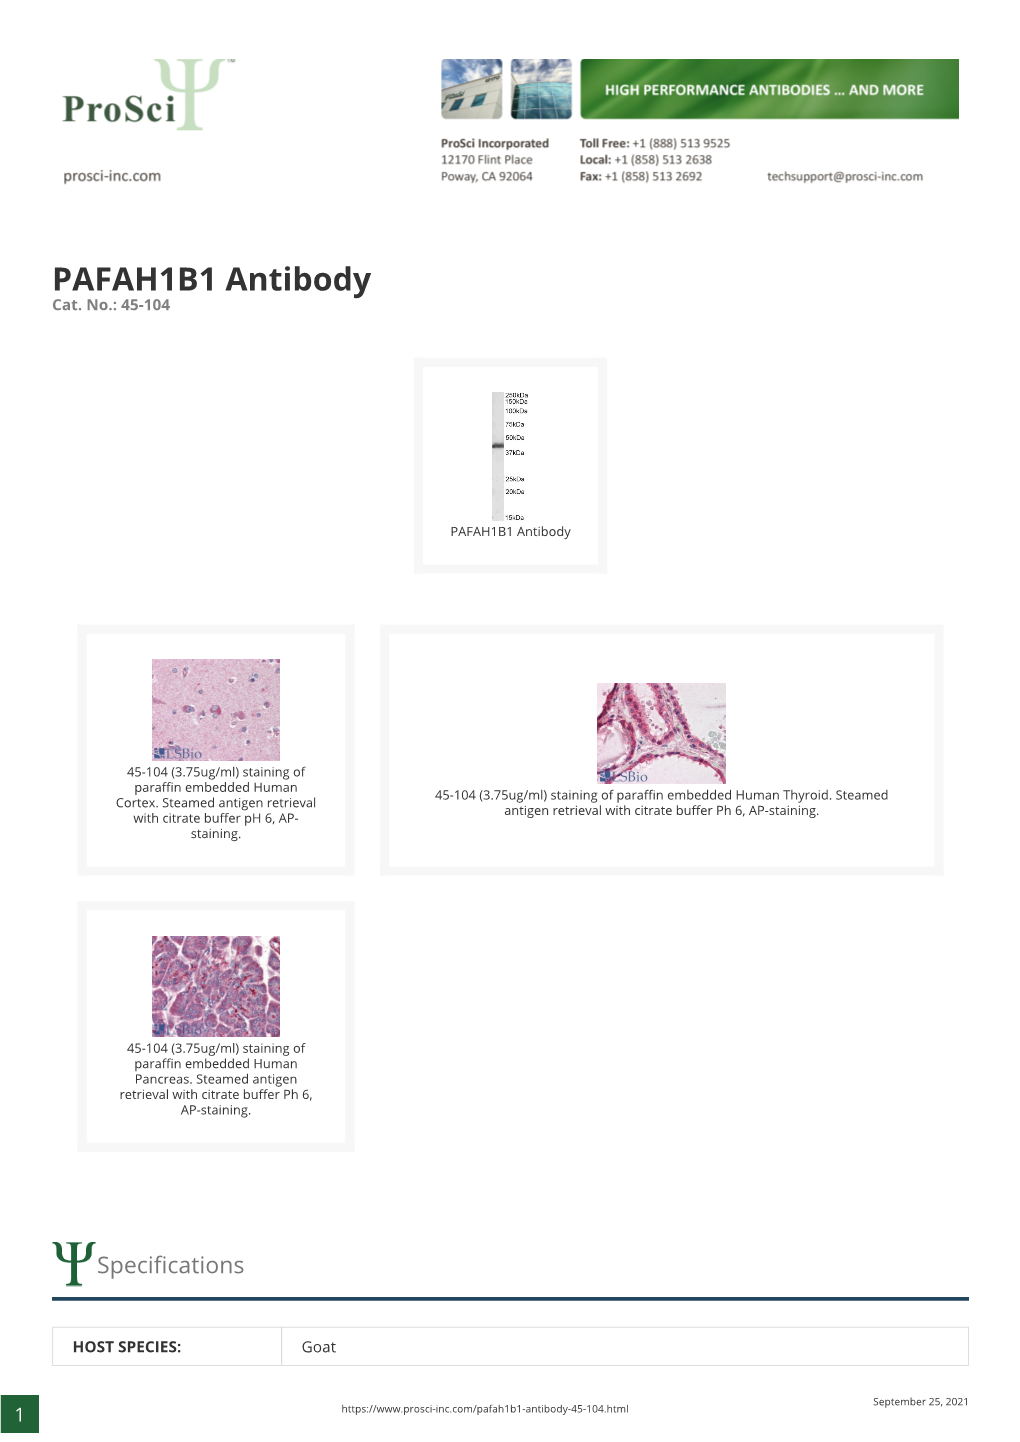 PAFAH1B1 Antibody Cat